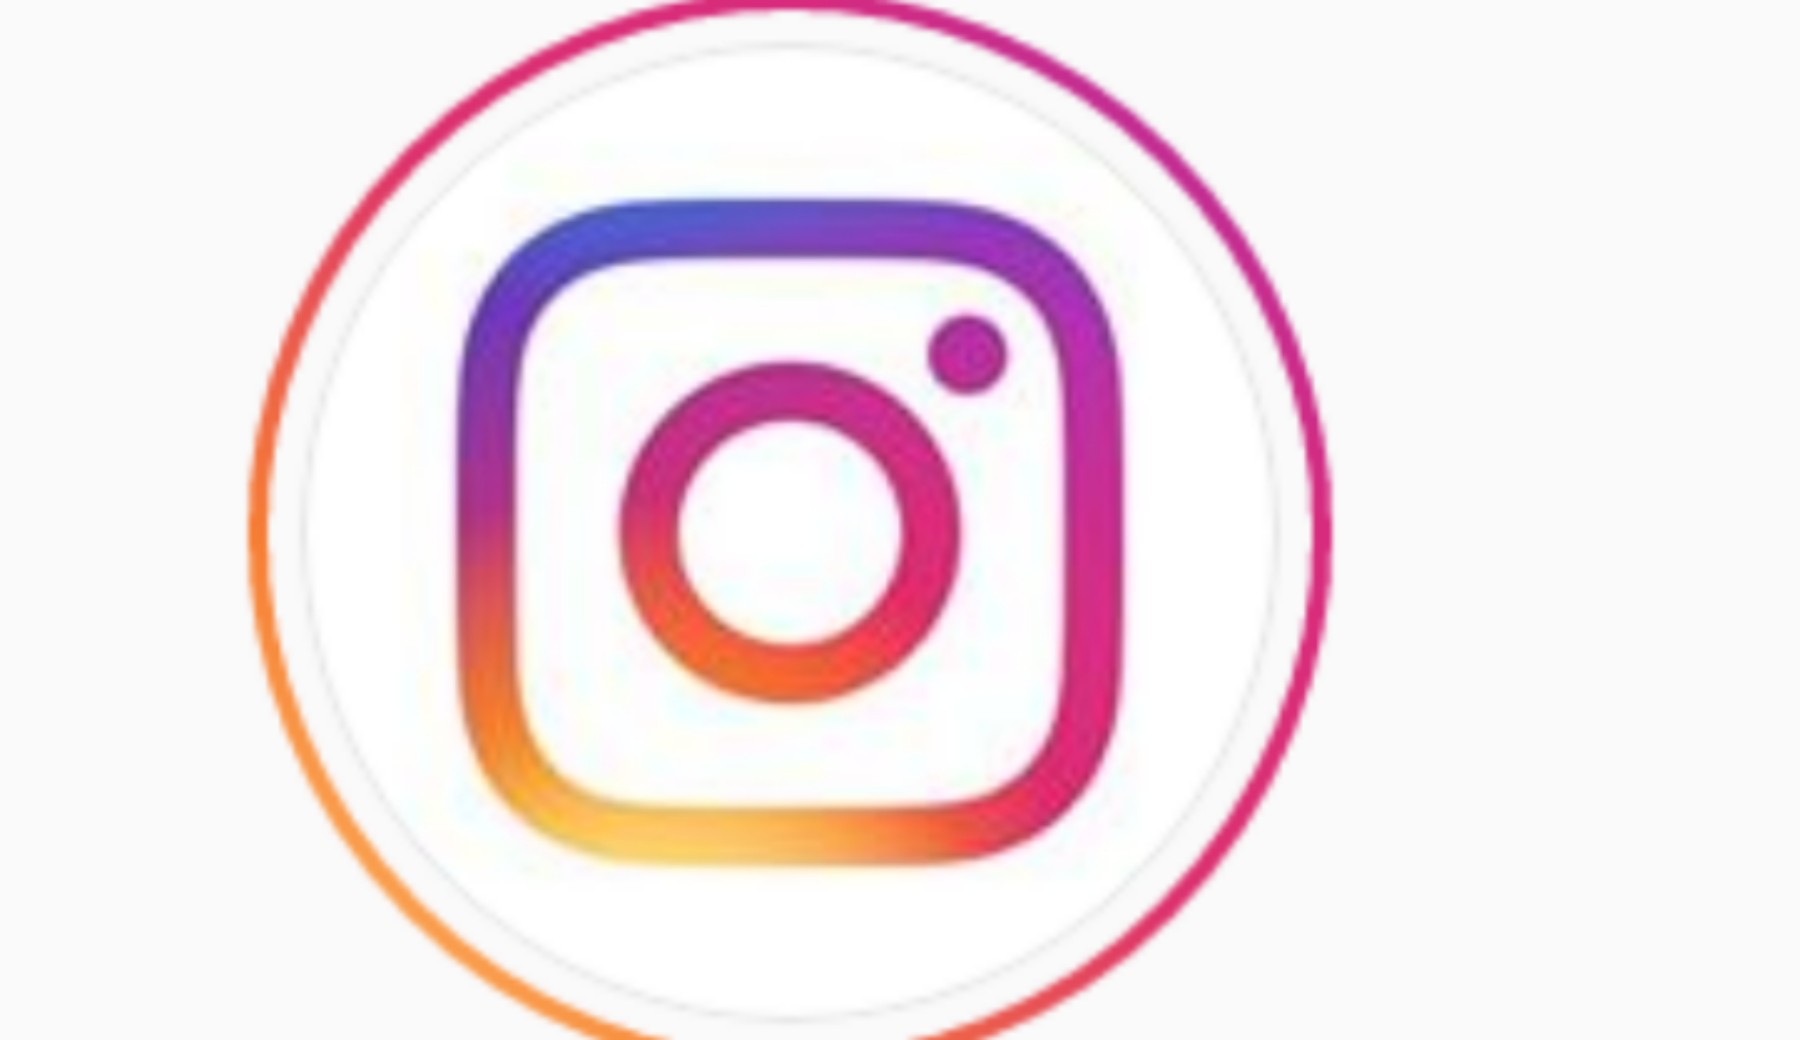 Crollo dei follower su Instagram, la fake news della pulizia degli account